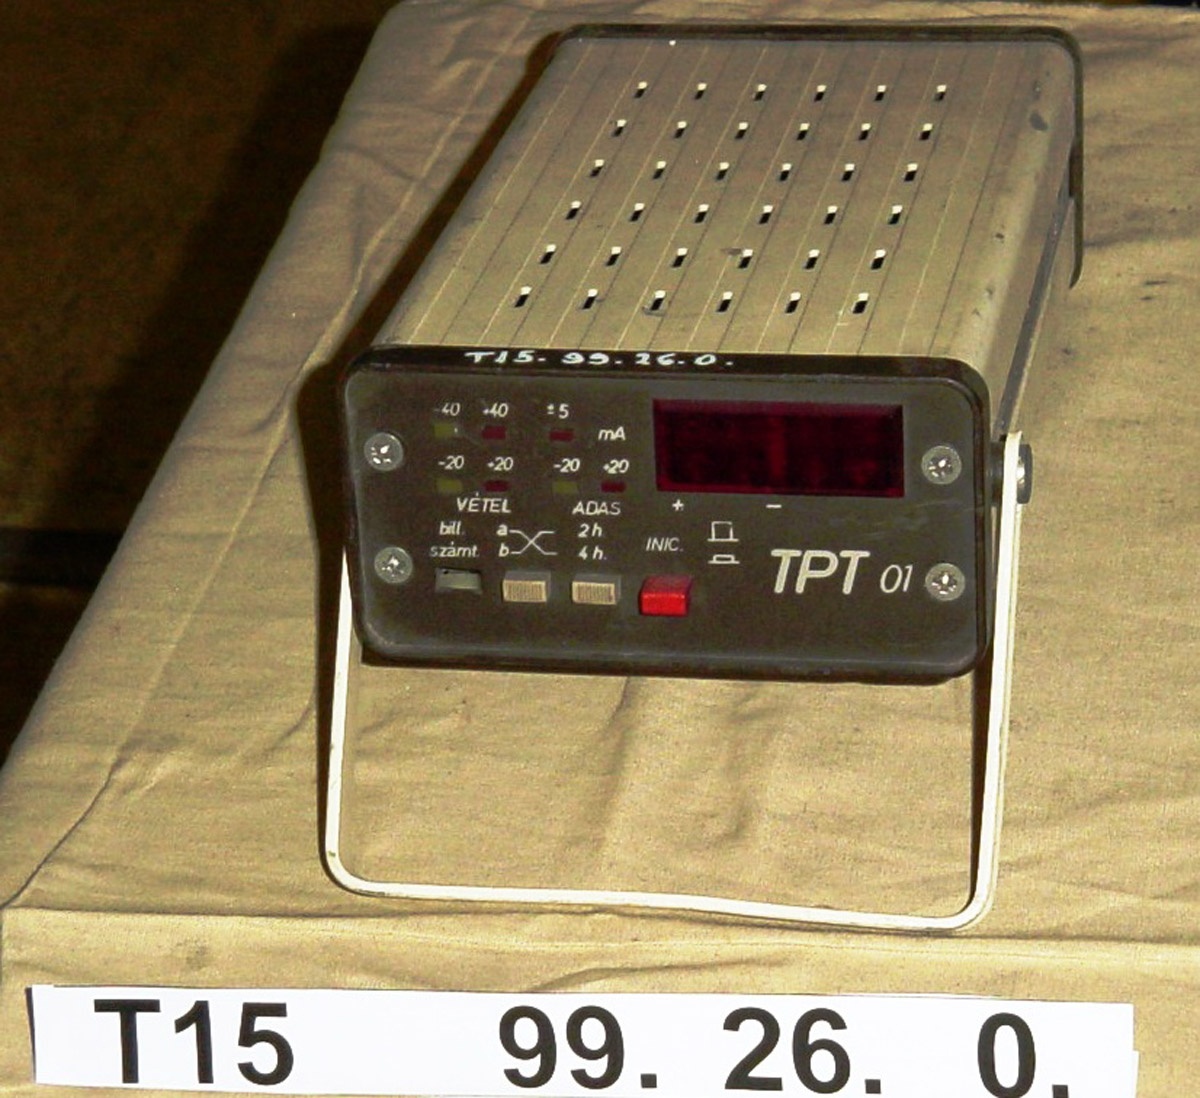 TPT 01 (távíró központ szimulátor műszer) (Postamúzeum CC BY-NC-SA)